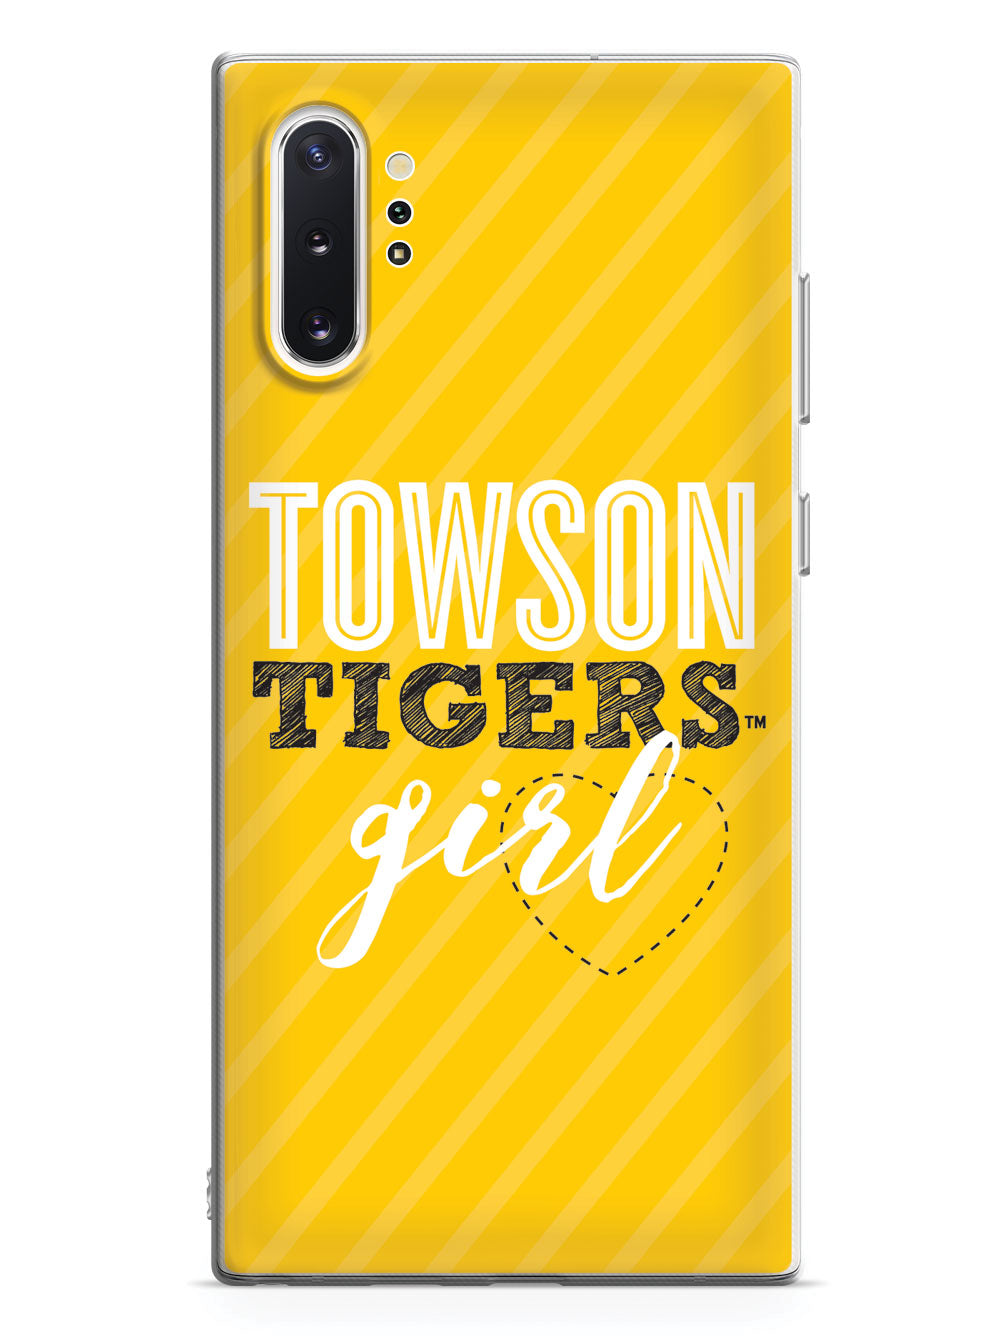 Towson Tigers Girl Case